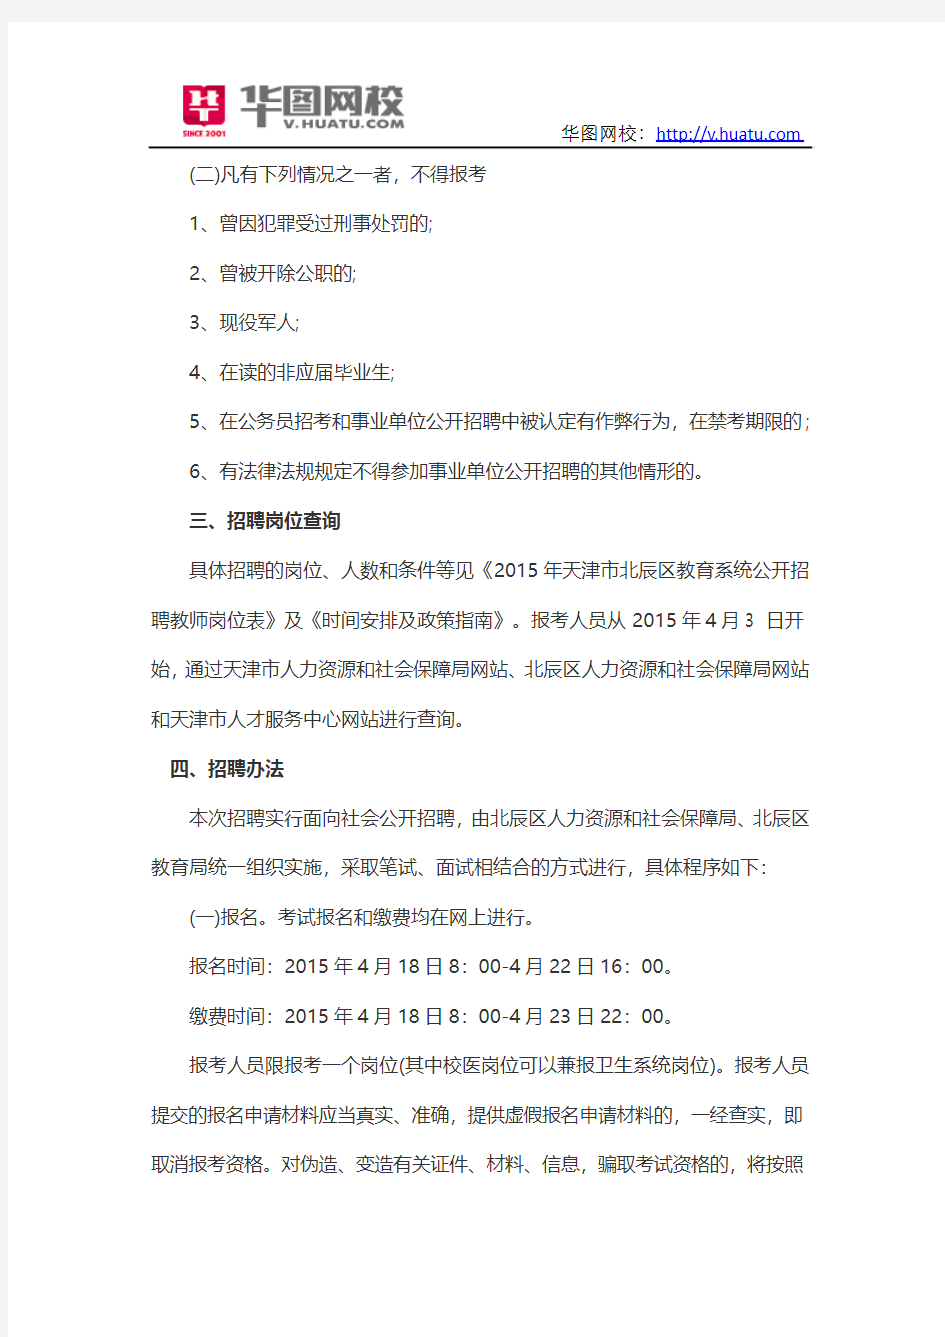 2015年天津市北辰区教育系统事业单位招考公告信息